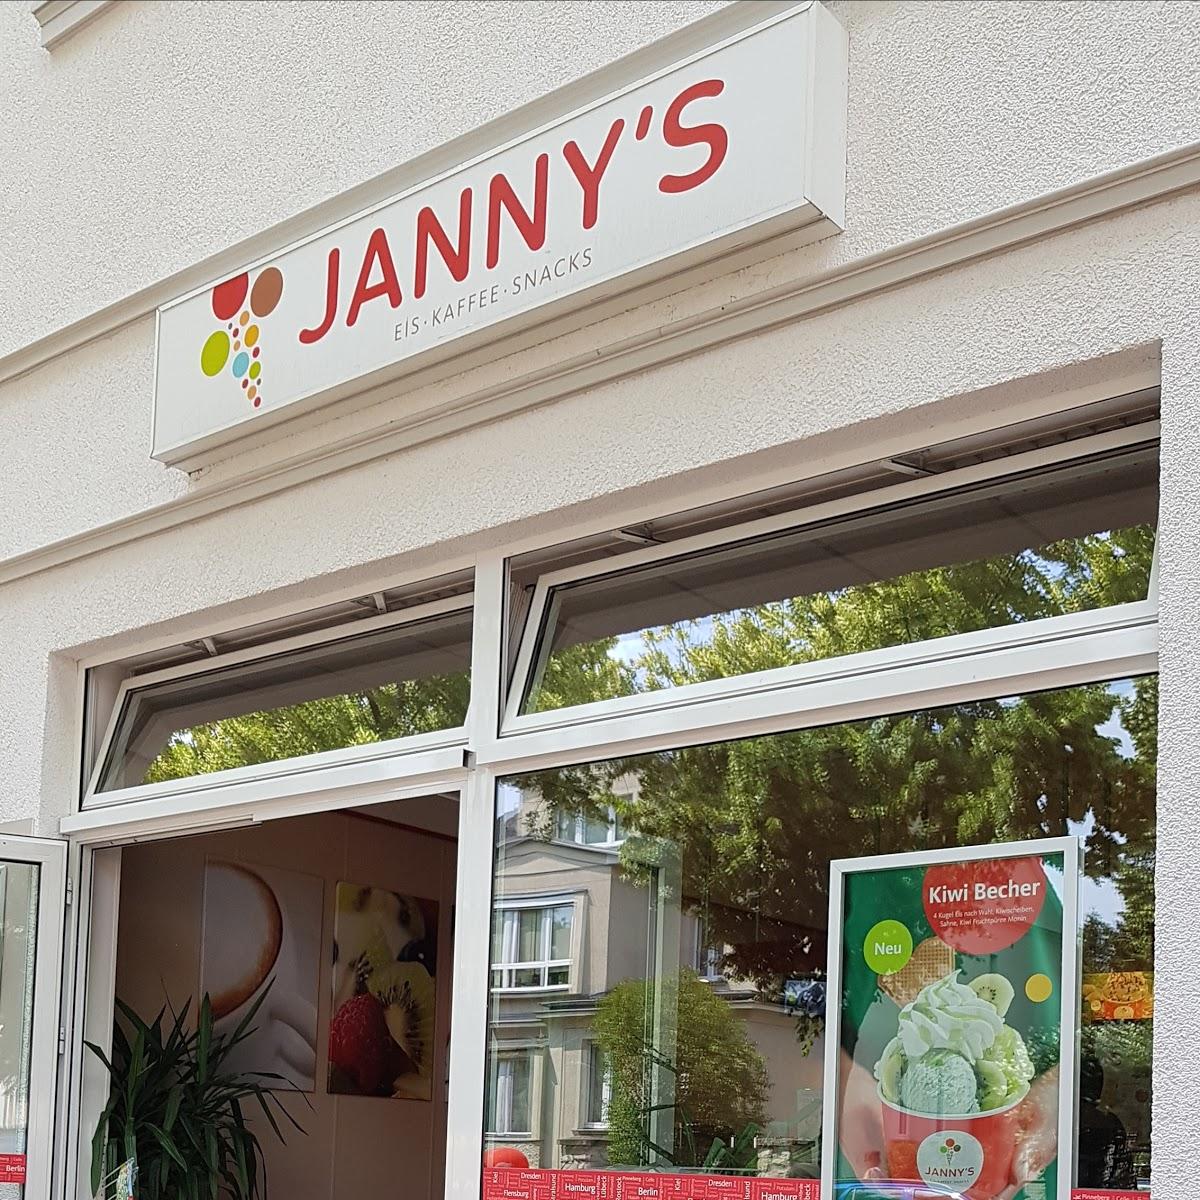 Restaurant "Jannys Eis" in  Berlin